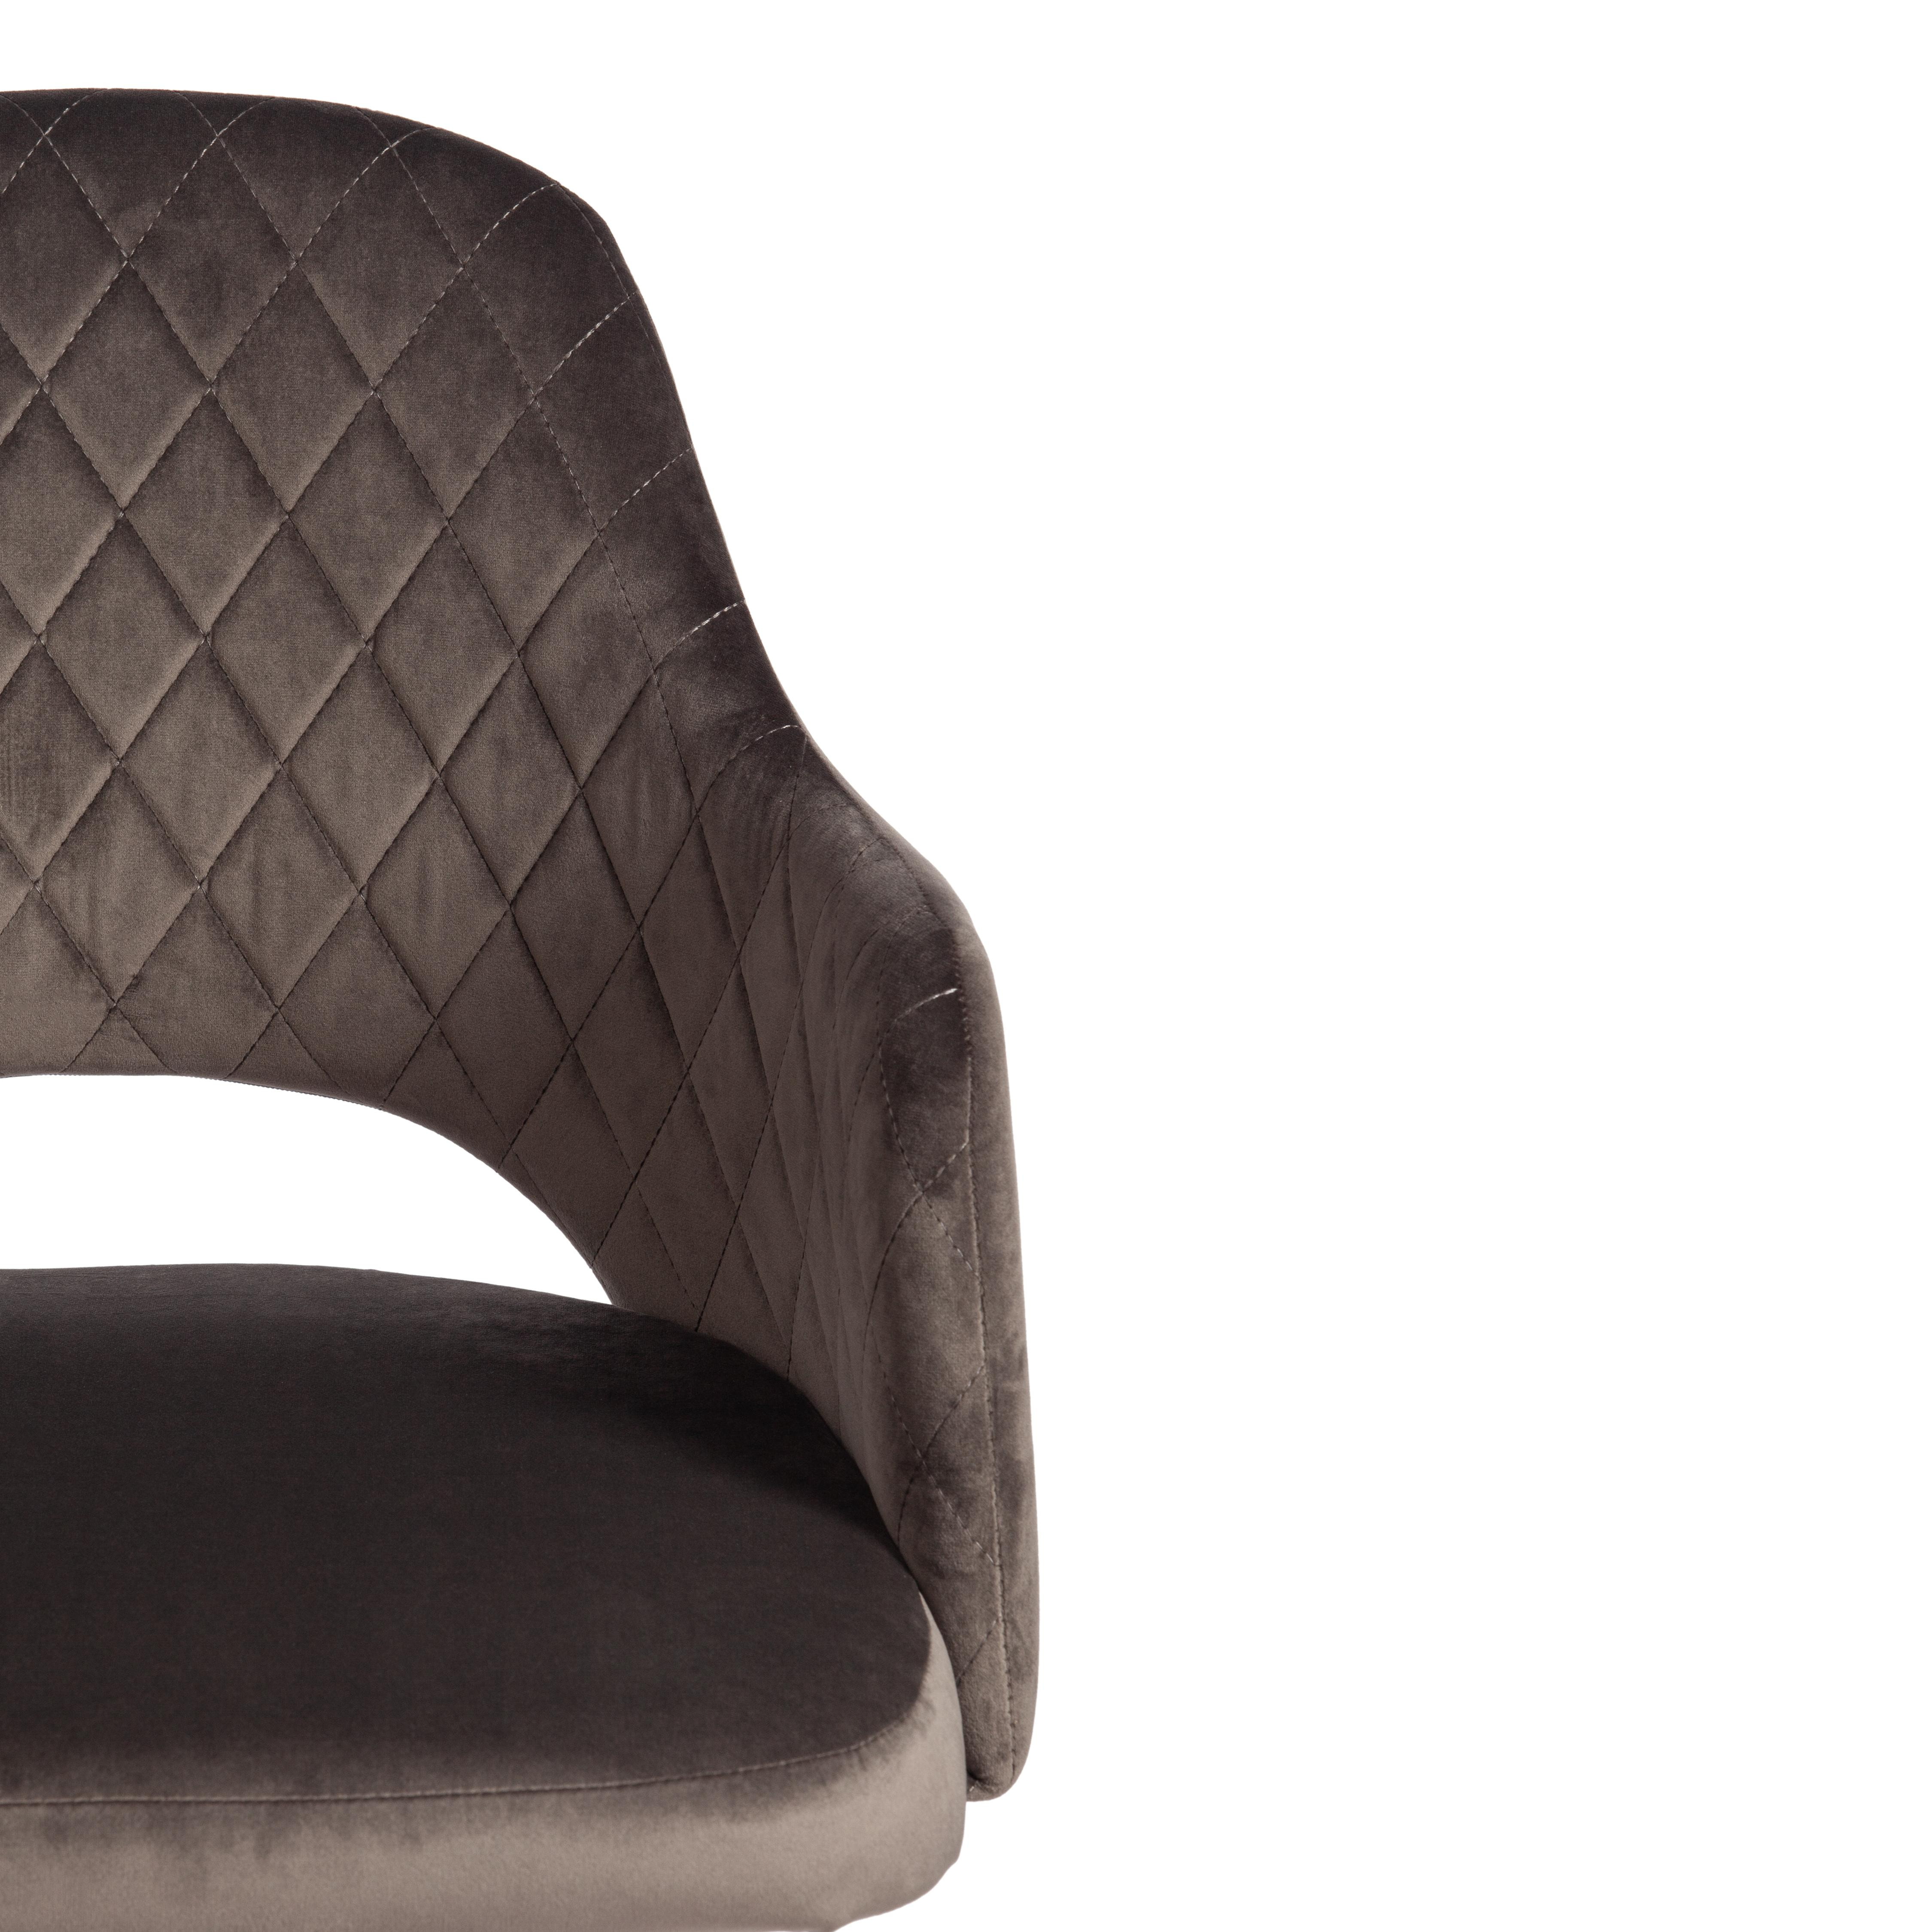 Кресло VALKYRIA (mod. 711) ткань/металл, 55х55х80 см, высота до сиденья 48 см, темно-серый barkhat 14/черный